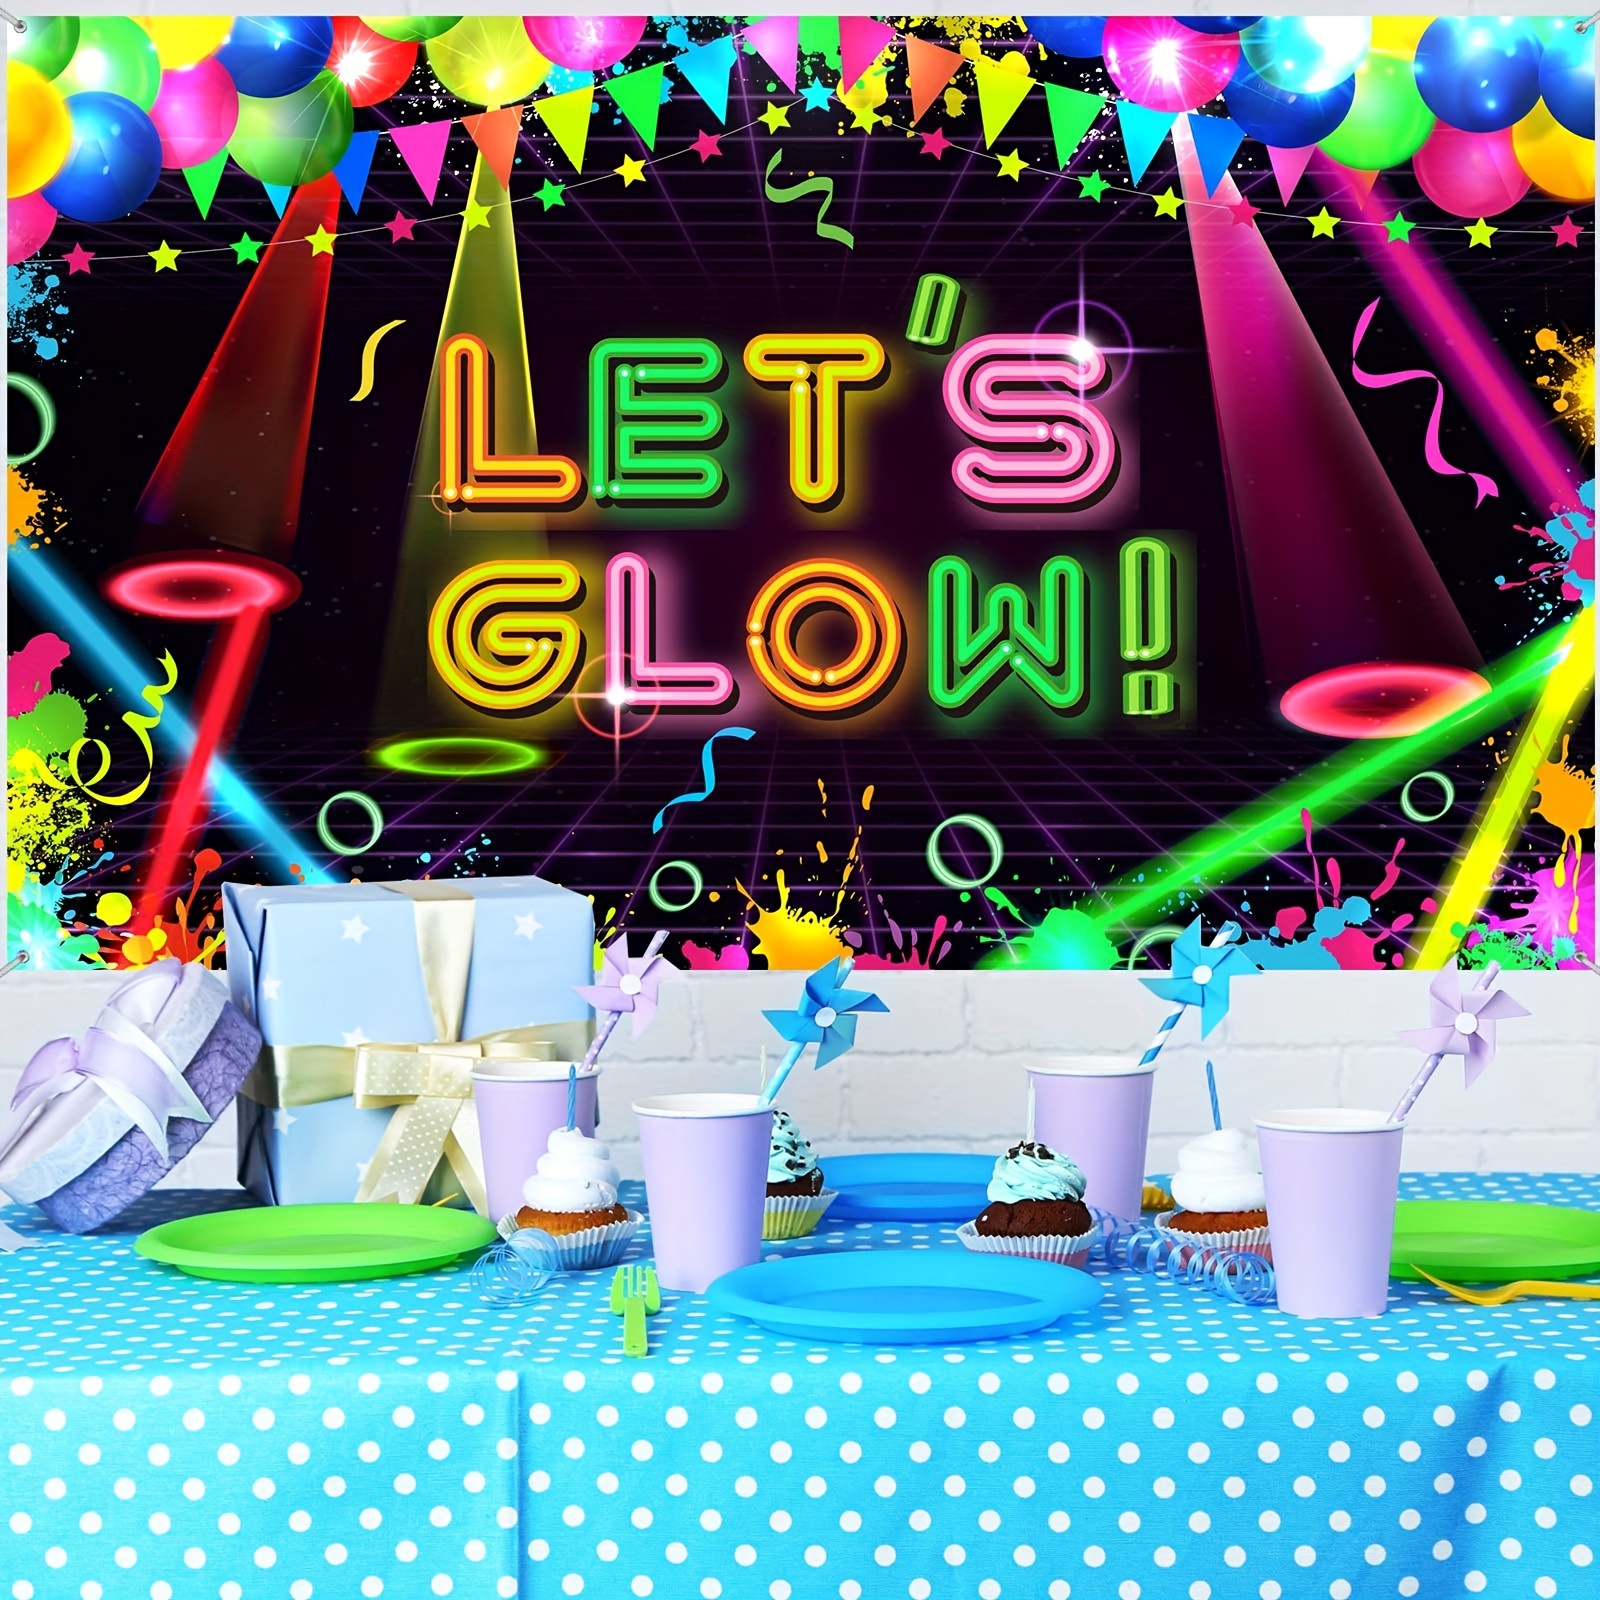 Neon Party Decor Ideas/Neon Theme For Birthdays, Neon Party